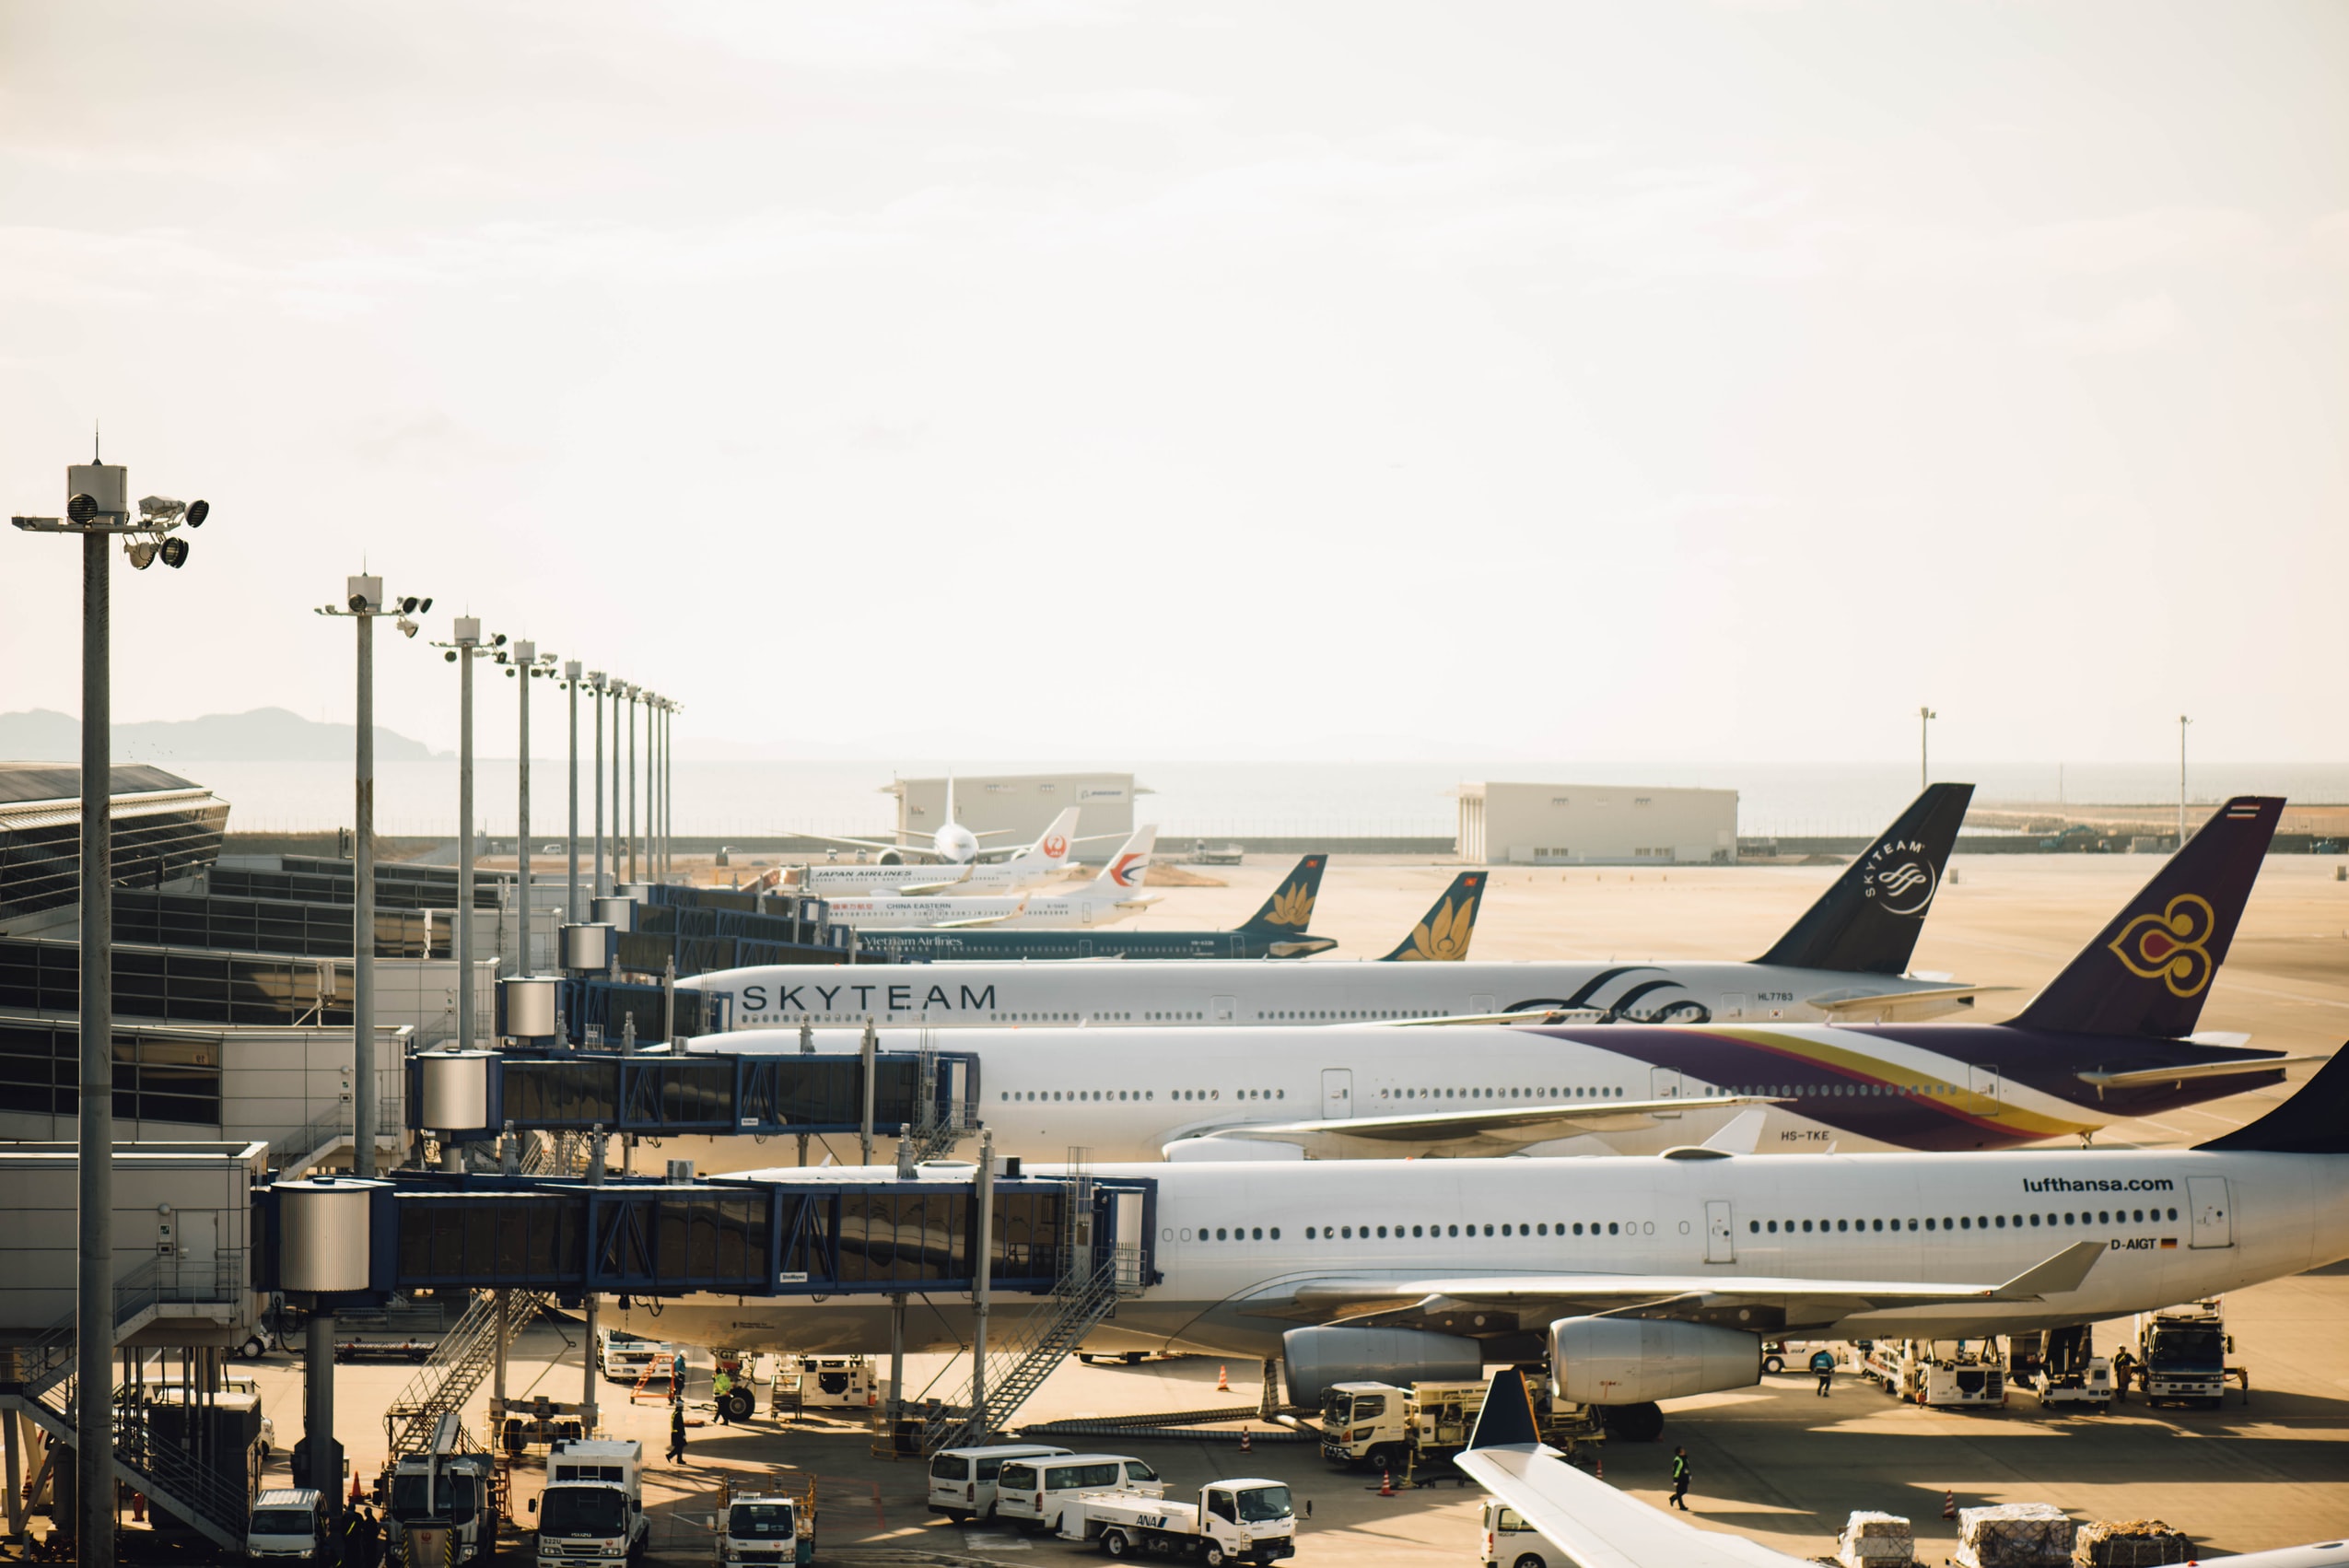 Row of aircraft at airport gates.